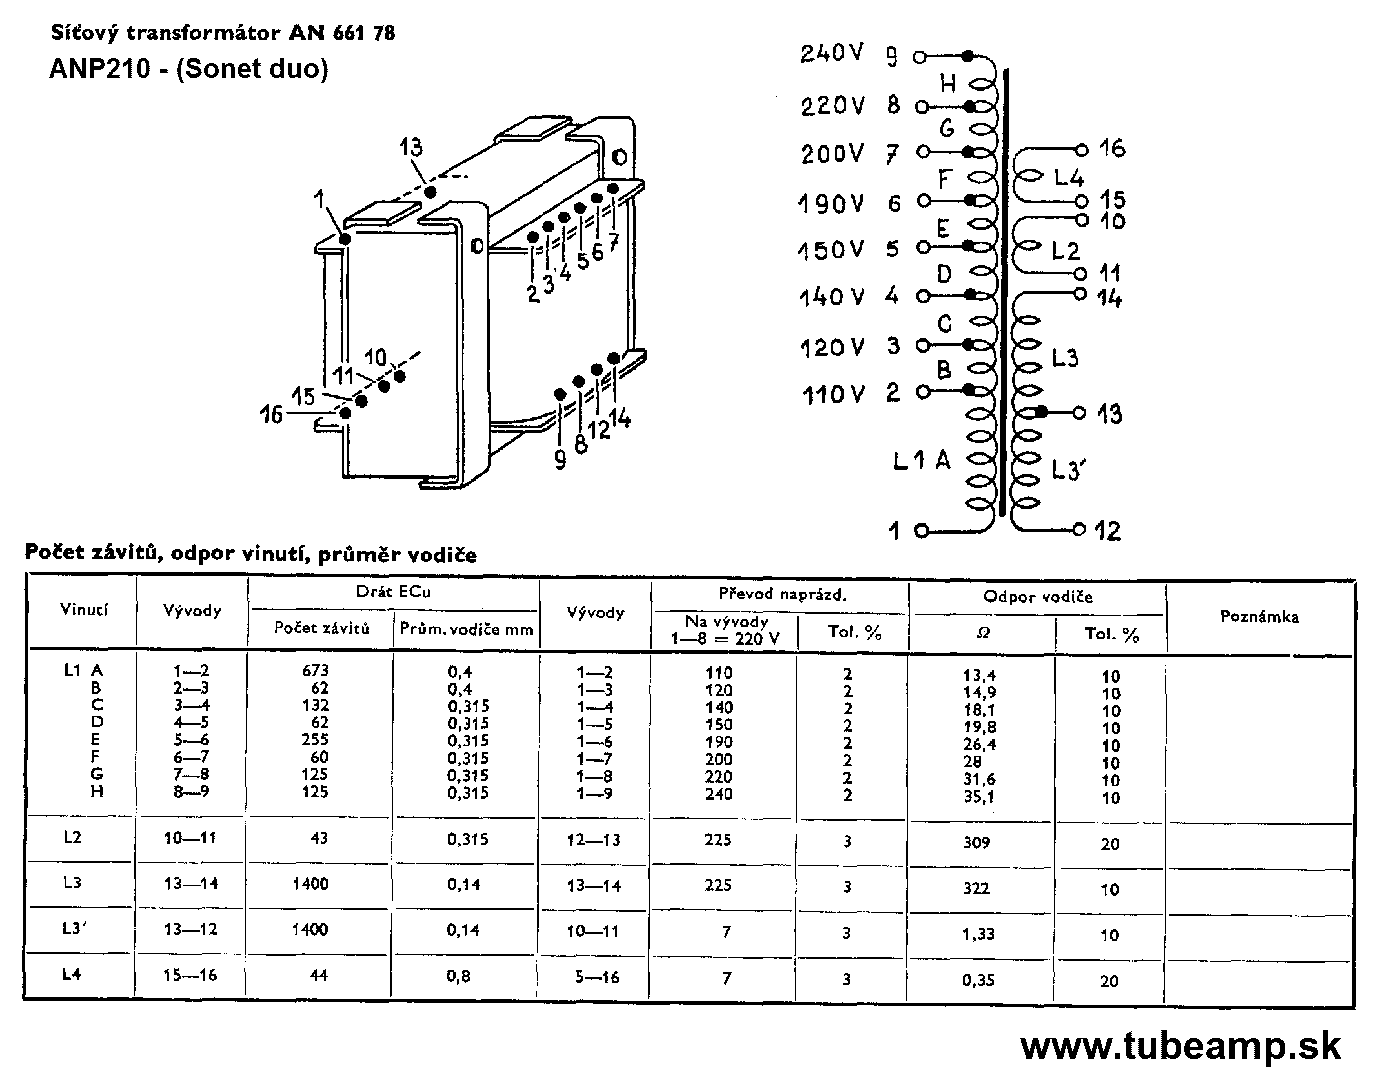 Navíjací predpis transformátora AN66178 (kliknutím sa zobrazí v plnom rozlíšení)